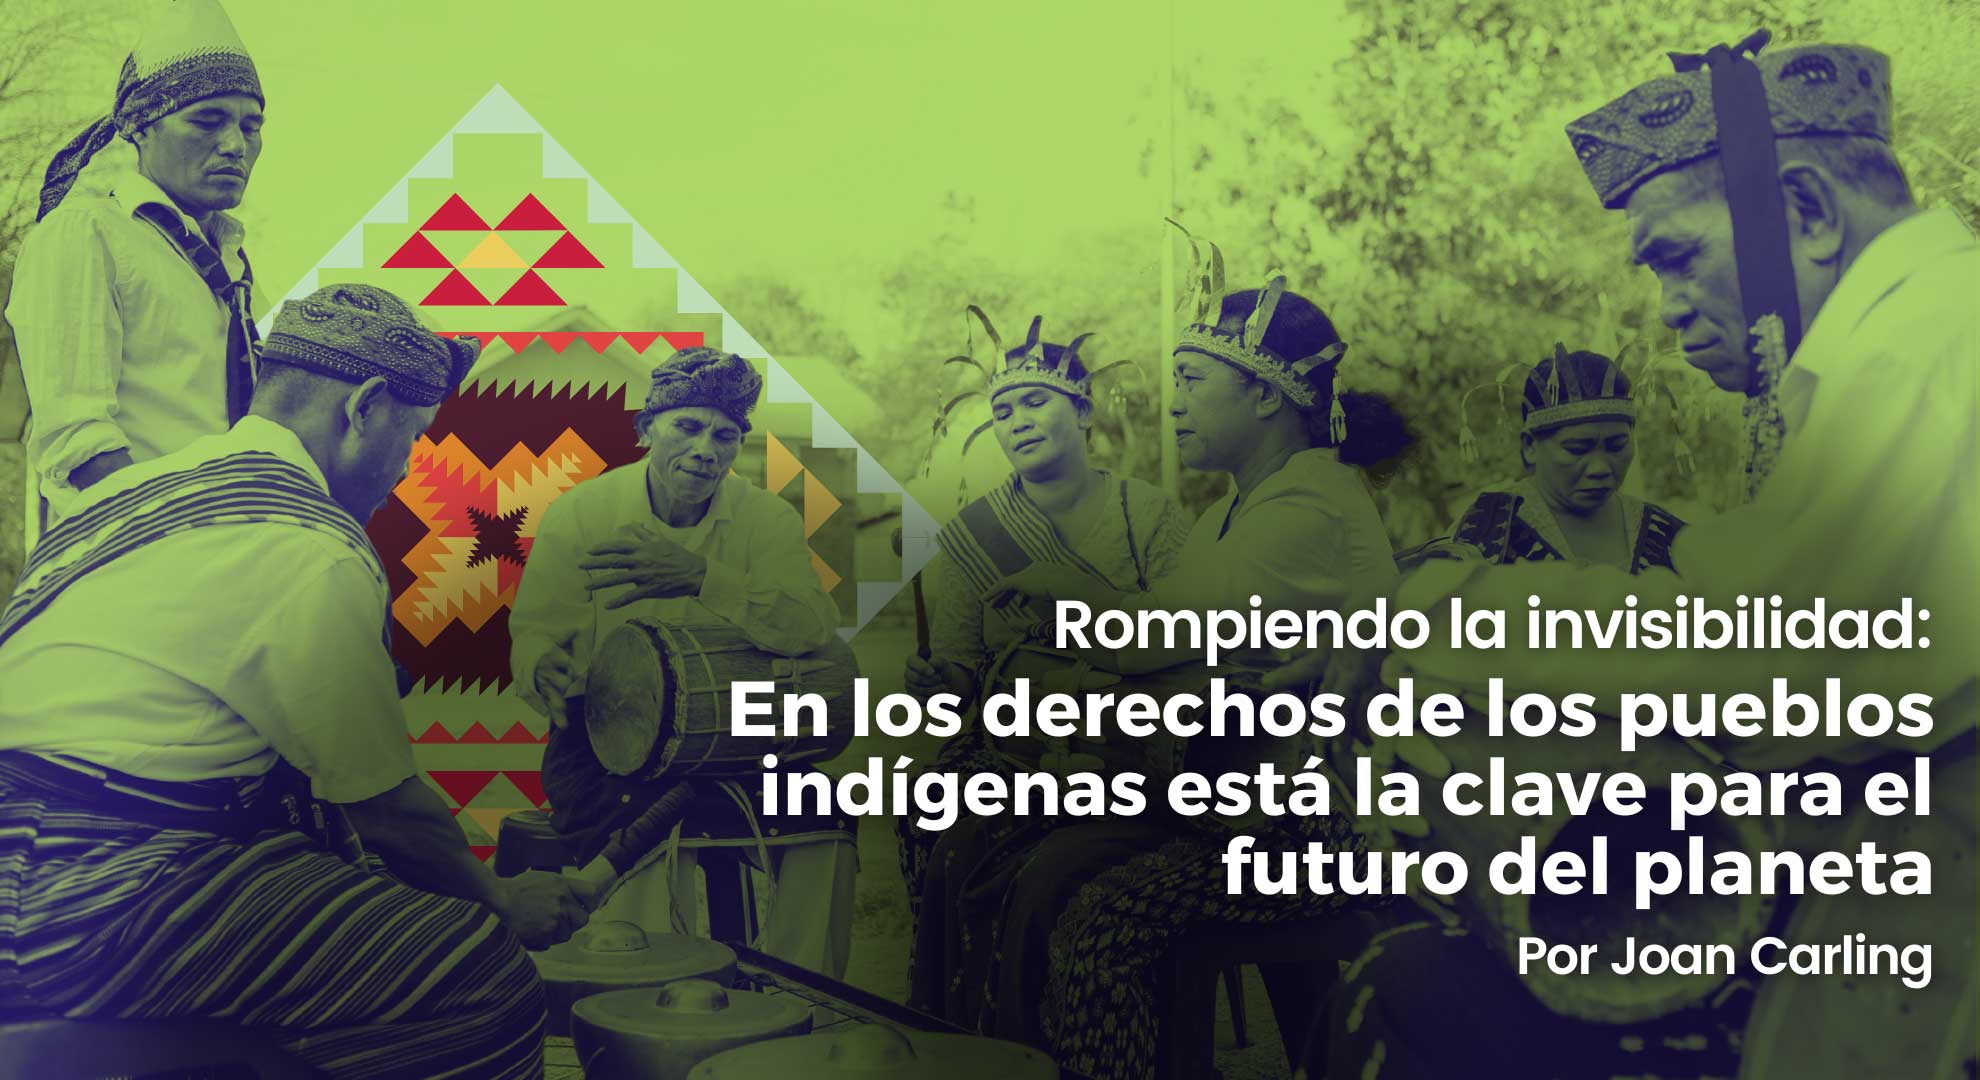 Rompiendo la invisibilidad: En los derechos de los pueblos indígenas está la clave para el futuro del planeta